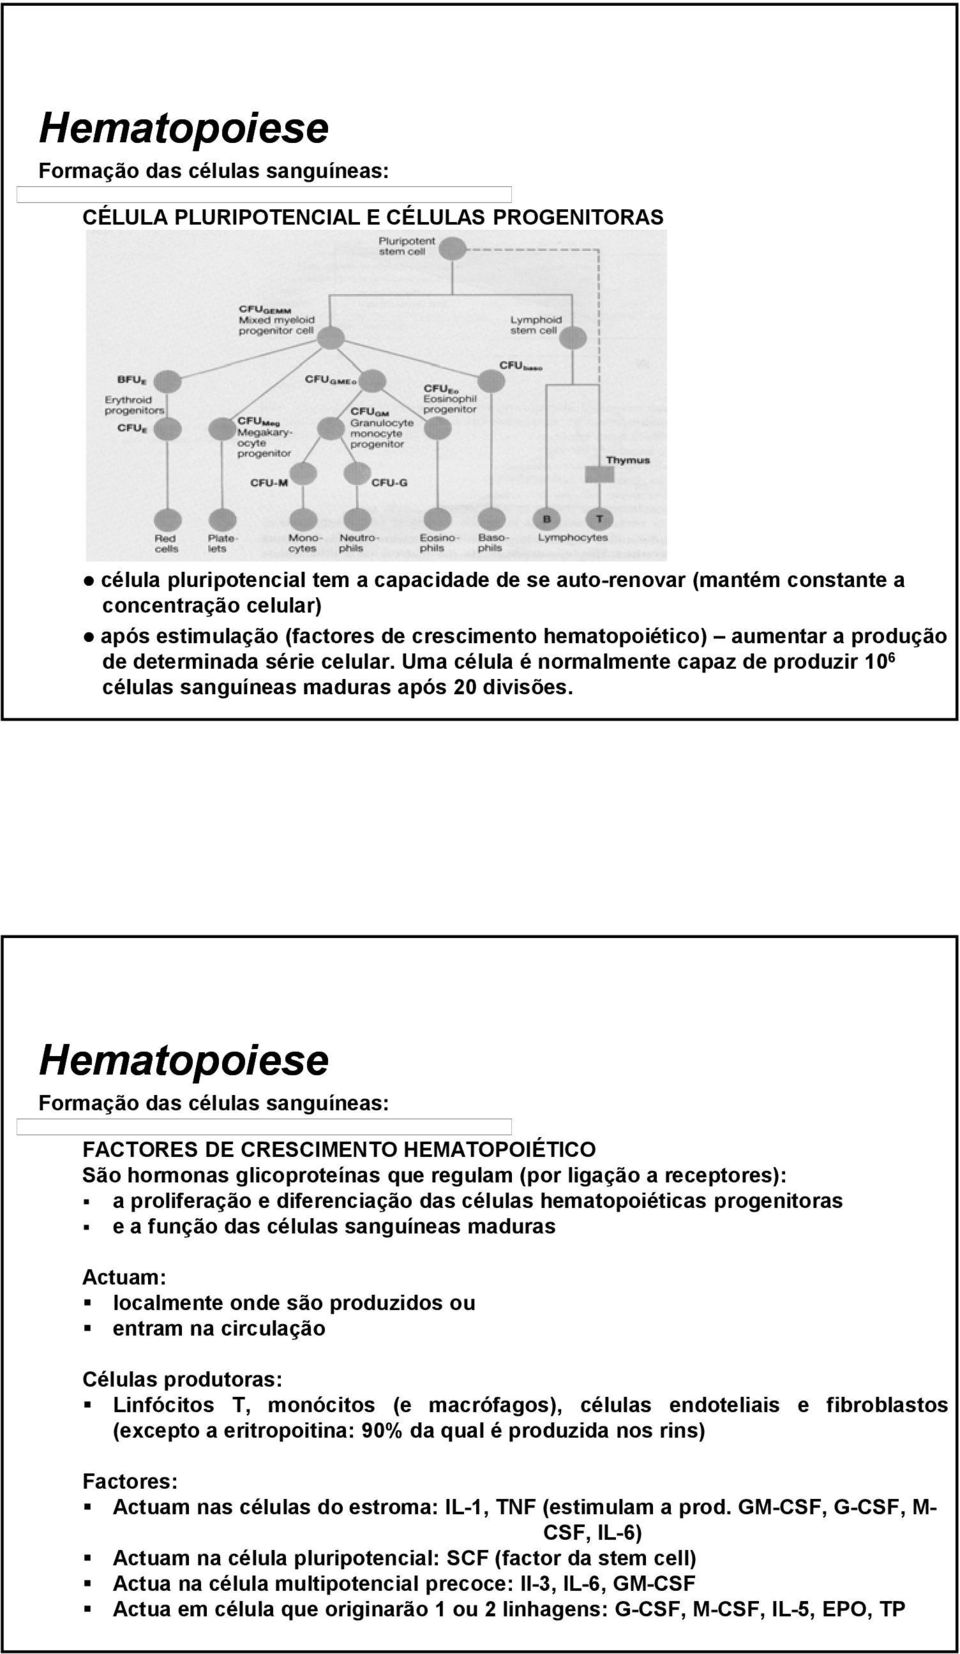 FACTORES DE CRESCIMENTO HEMATOPOIÉTICO São hormonas glicoproteínas que regulam (por ligação a receptores): a proliferação e diferenciação das células hematopoiéticas progenitoras e a função das